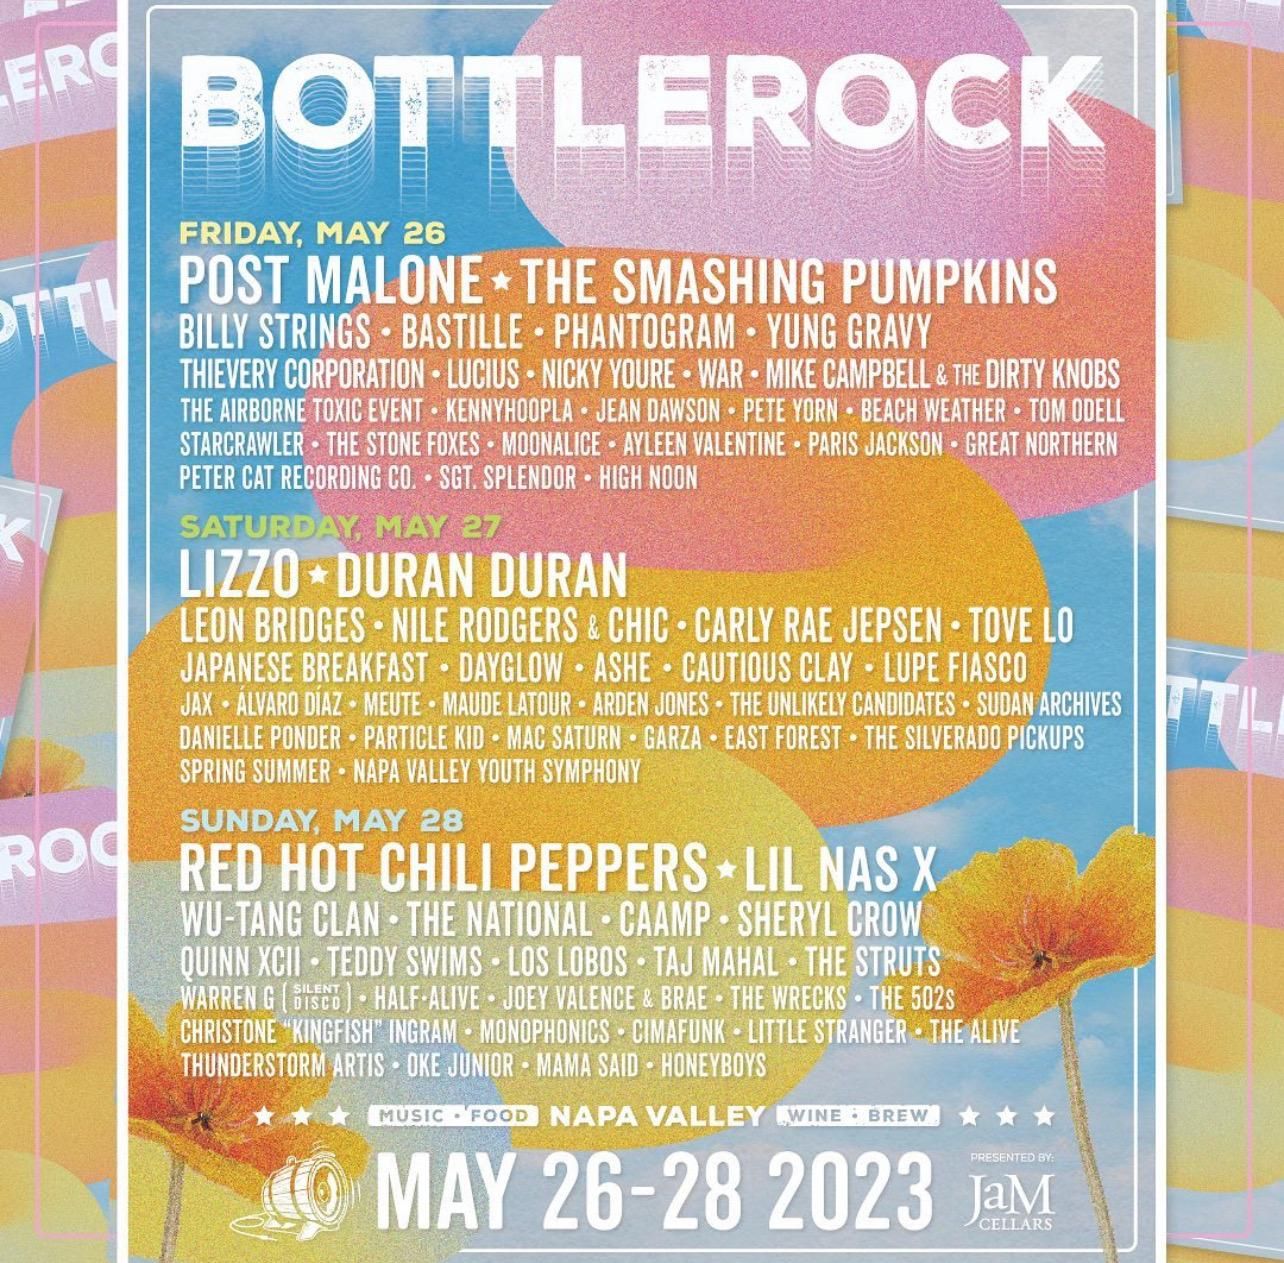 BottleRock 2023 Lineup